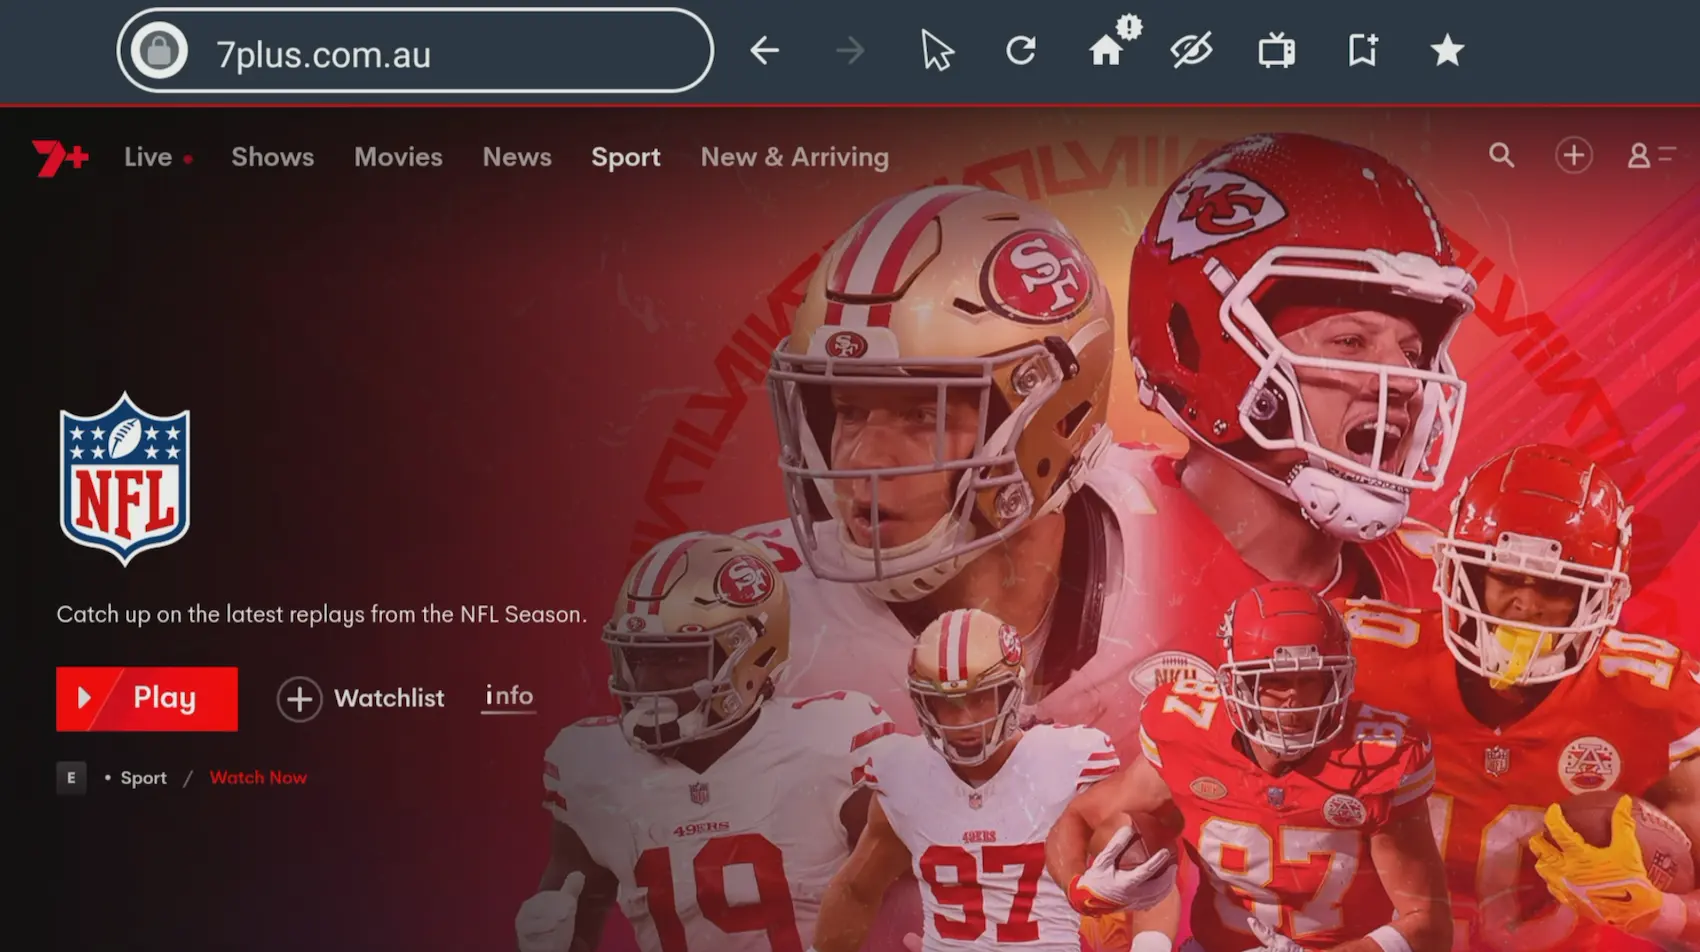 Contenu NFL sur 7plus.com.au, accessible via le navigateur Silk intégré sur Fire TV. Présentant un collage de joueurs de football des 49ers de San Francisco et des Chiefs de Kansas City dans des poses d'action, avec un accent sur les quarterbacks au centre. Le logo de la NFL est affiché bien en évidence.